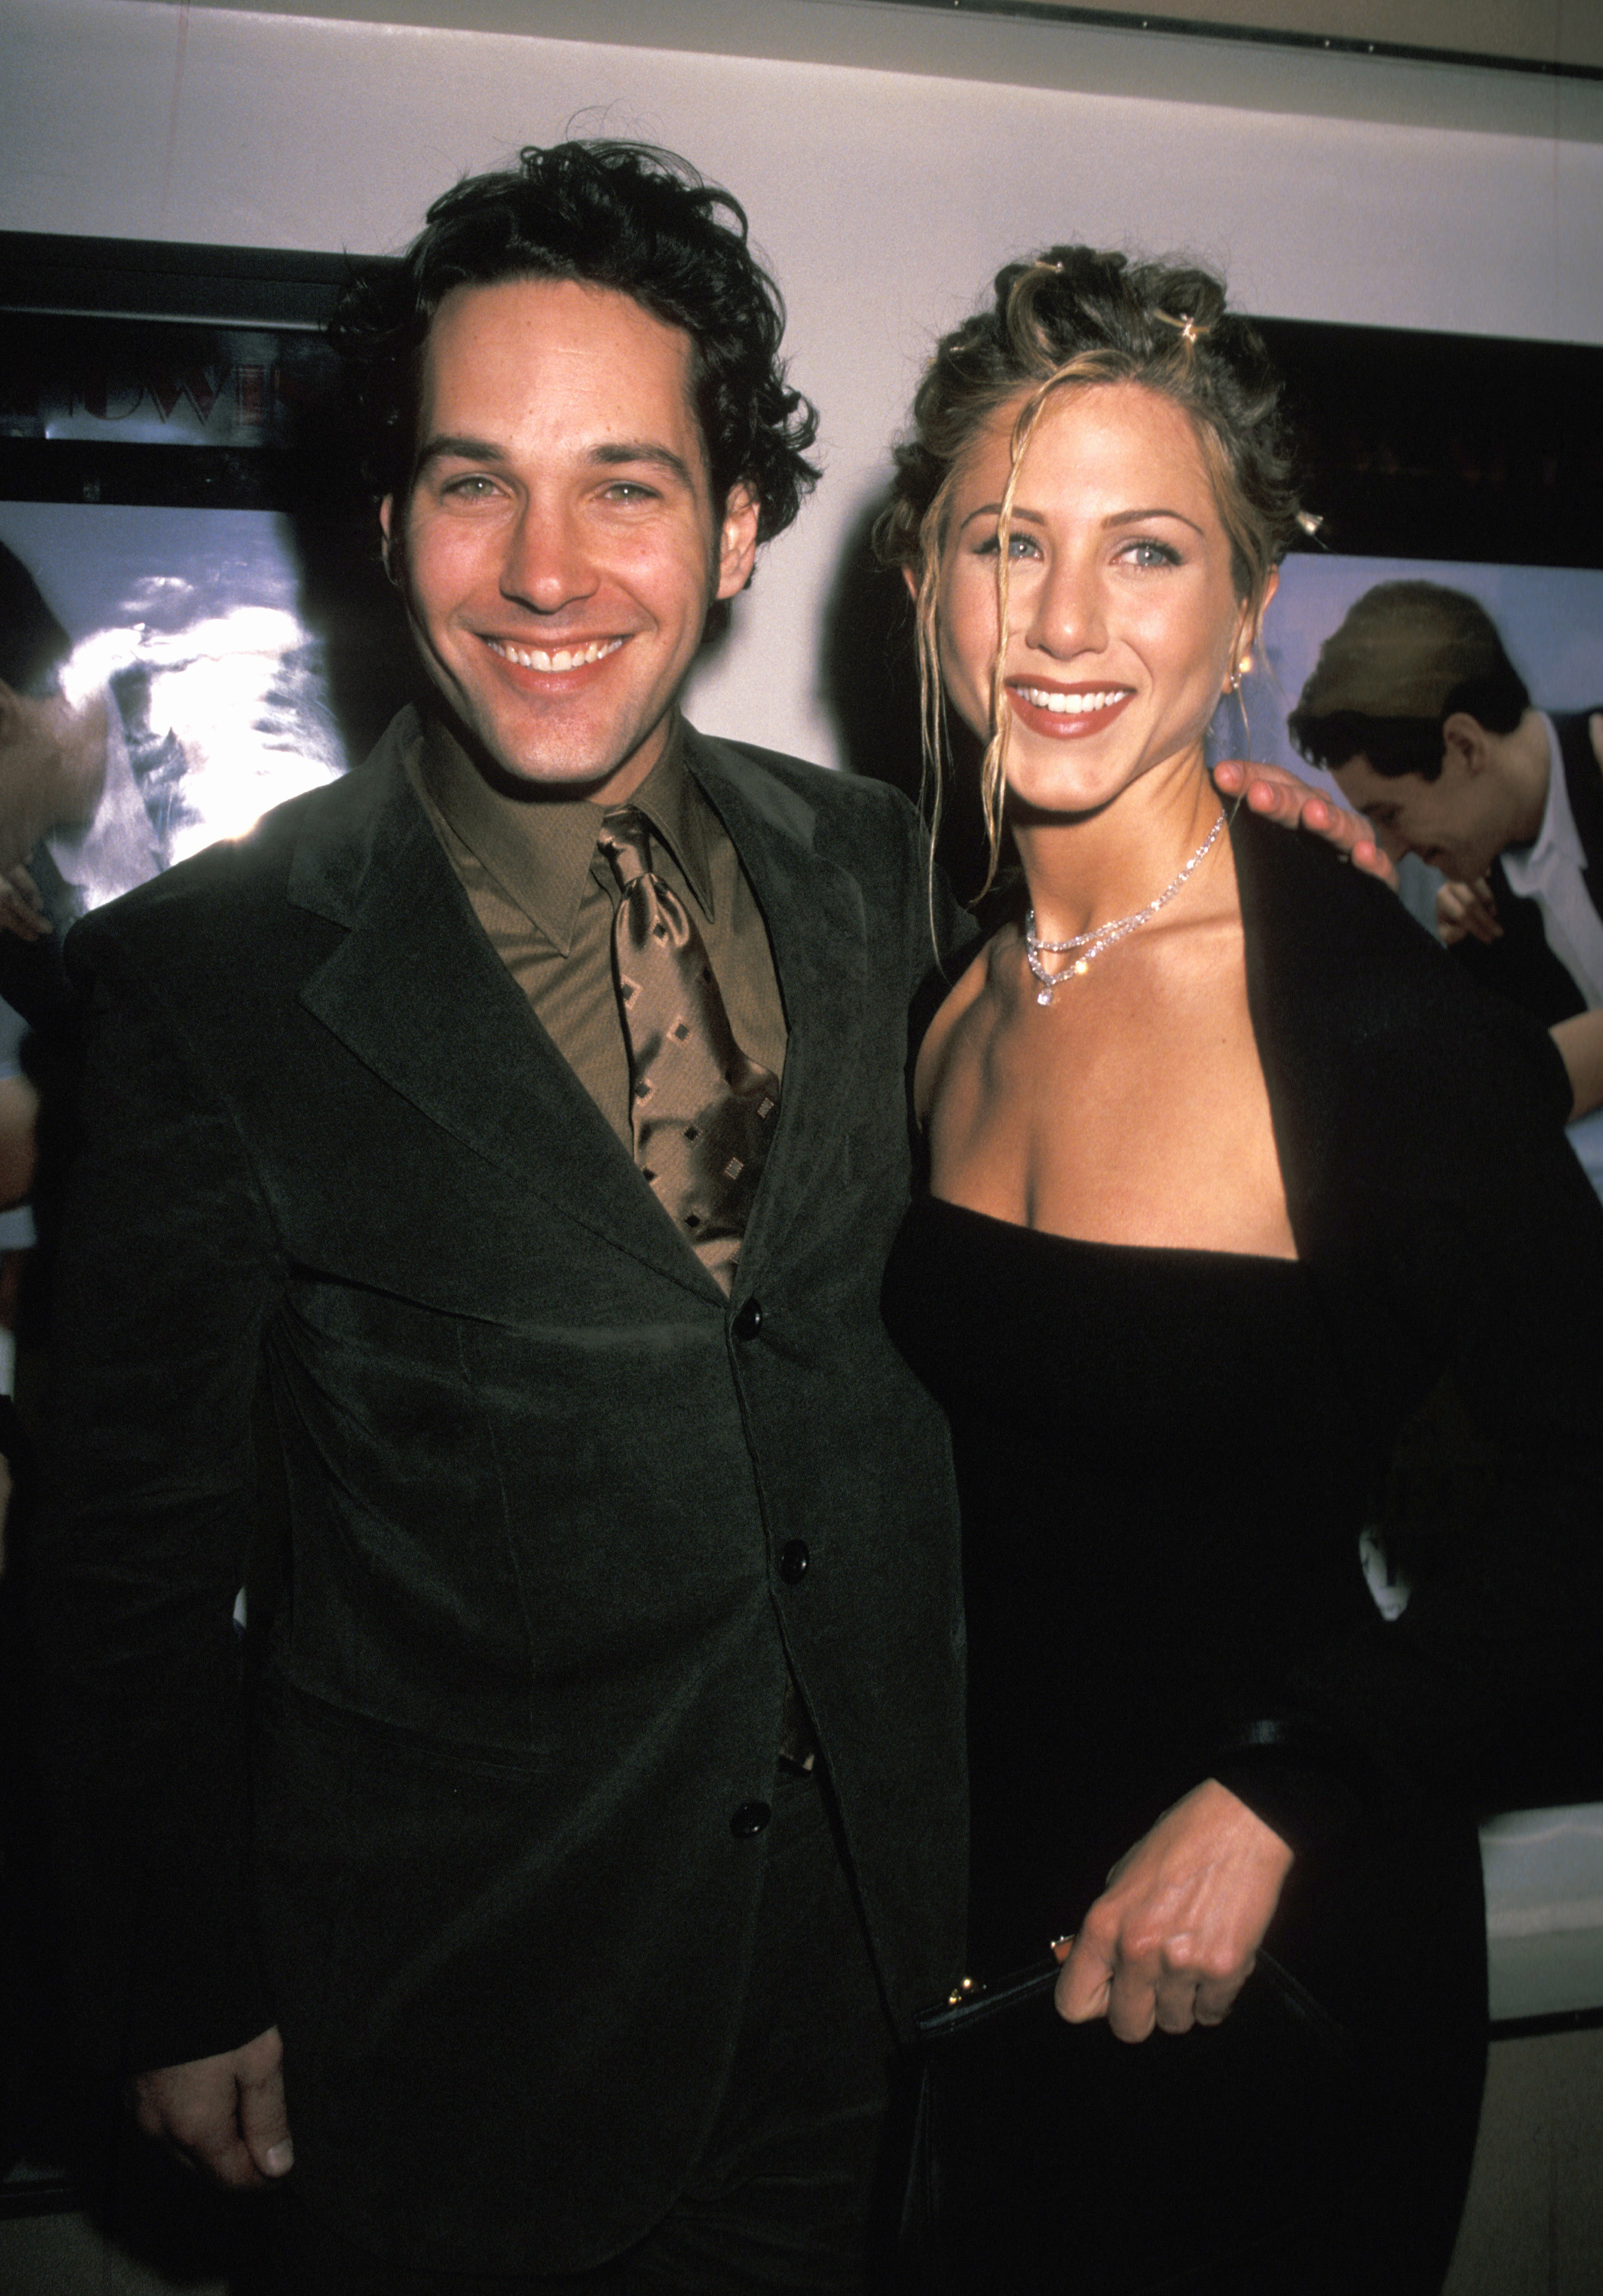 Paul Rudd et Jennifer Aniston lors de la projection à New York de "The Object of My Affection" le 15 avril 1998 | Source : Getty Image